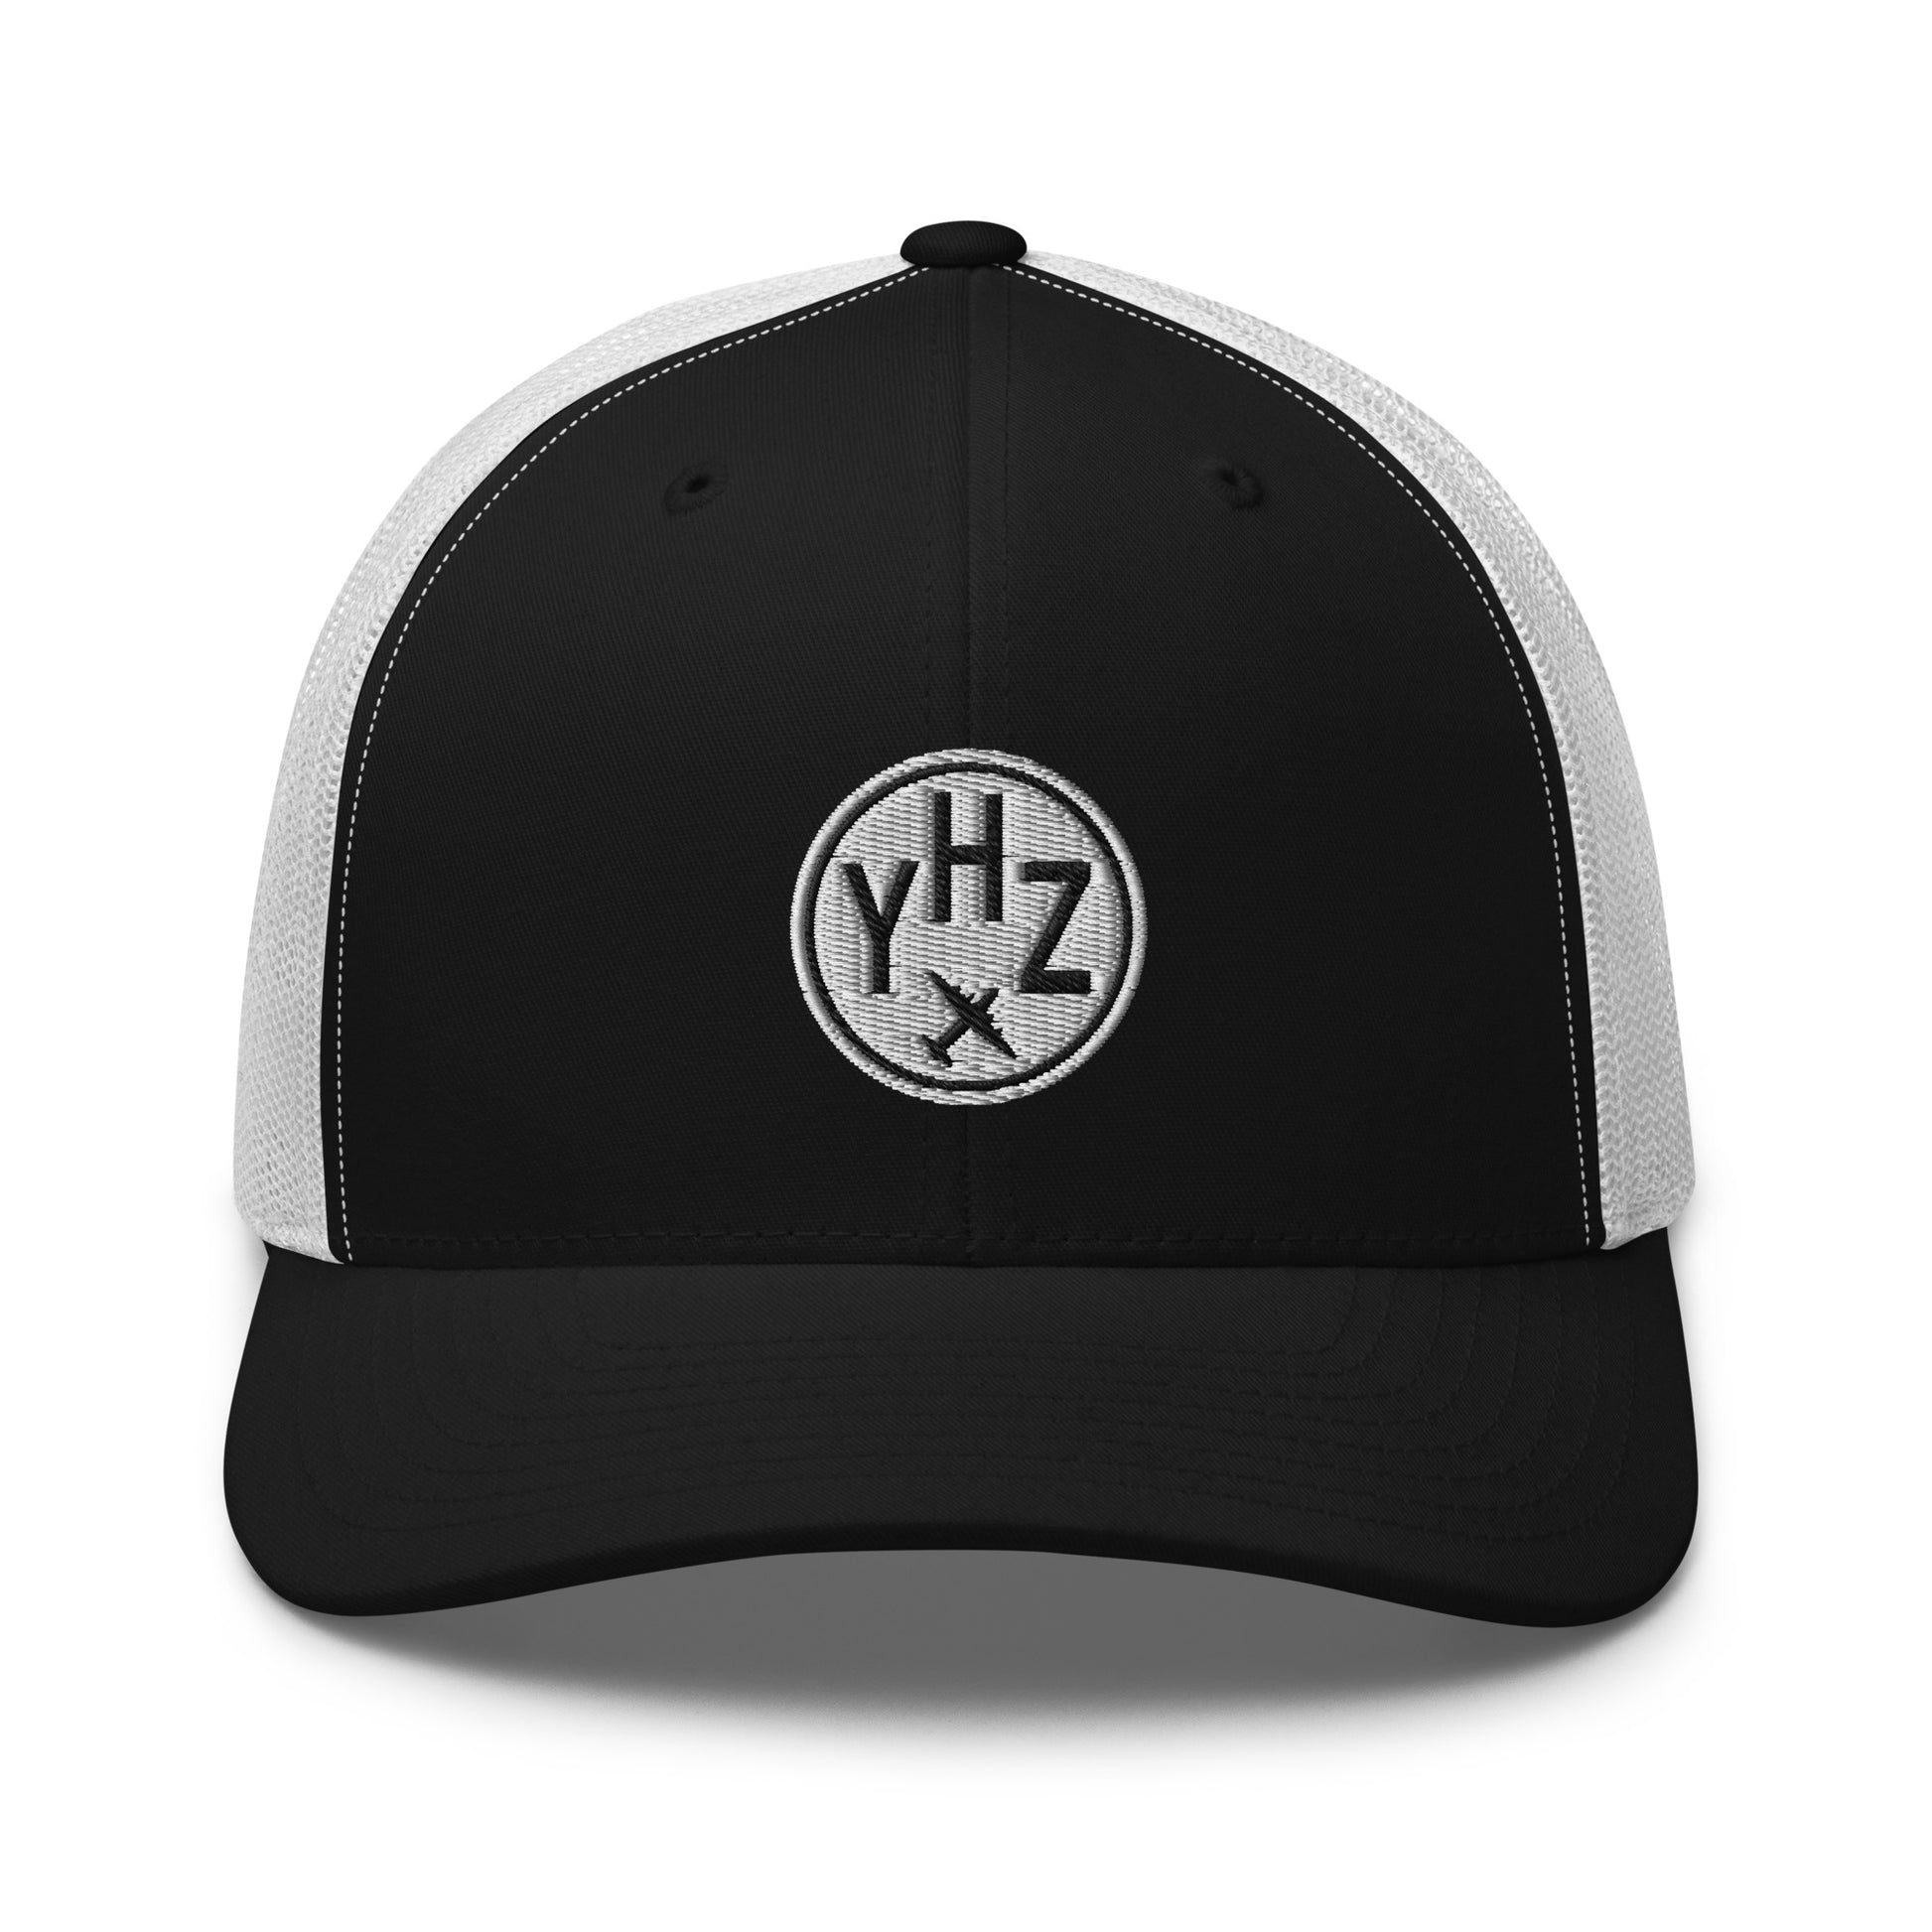 Roundel Trucker Hat - Black & White • YHZ Halifax • YHM Designs - Image 09